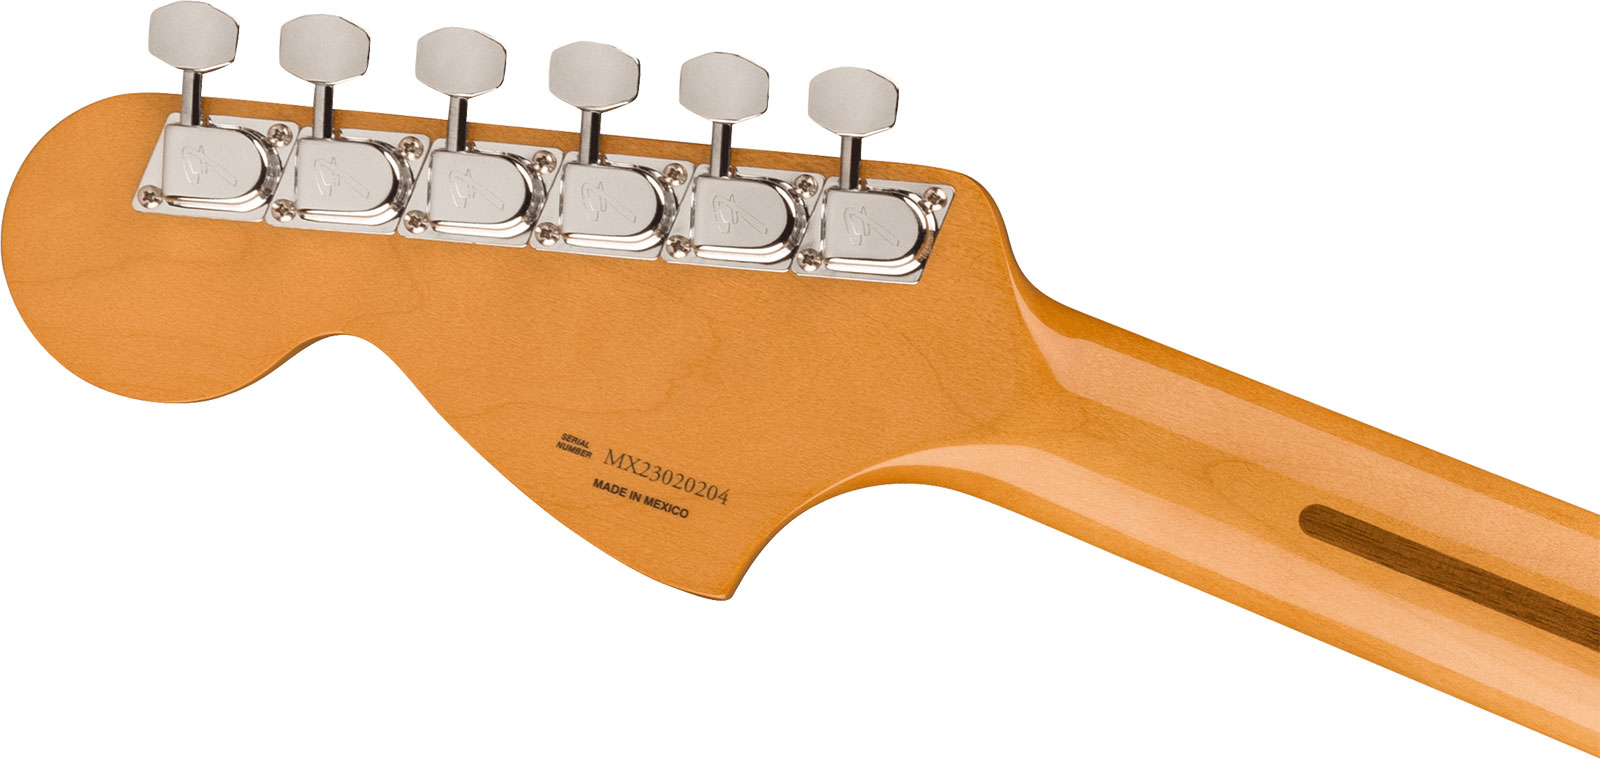 Fender Strat 70s Vintera 2 Mex 3s Trem Mn - 3-color Sunburst - E-Gitarre in Str-Form - Variation 3